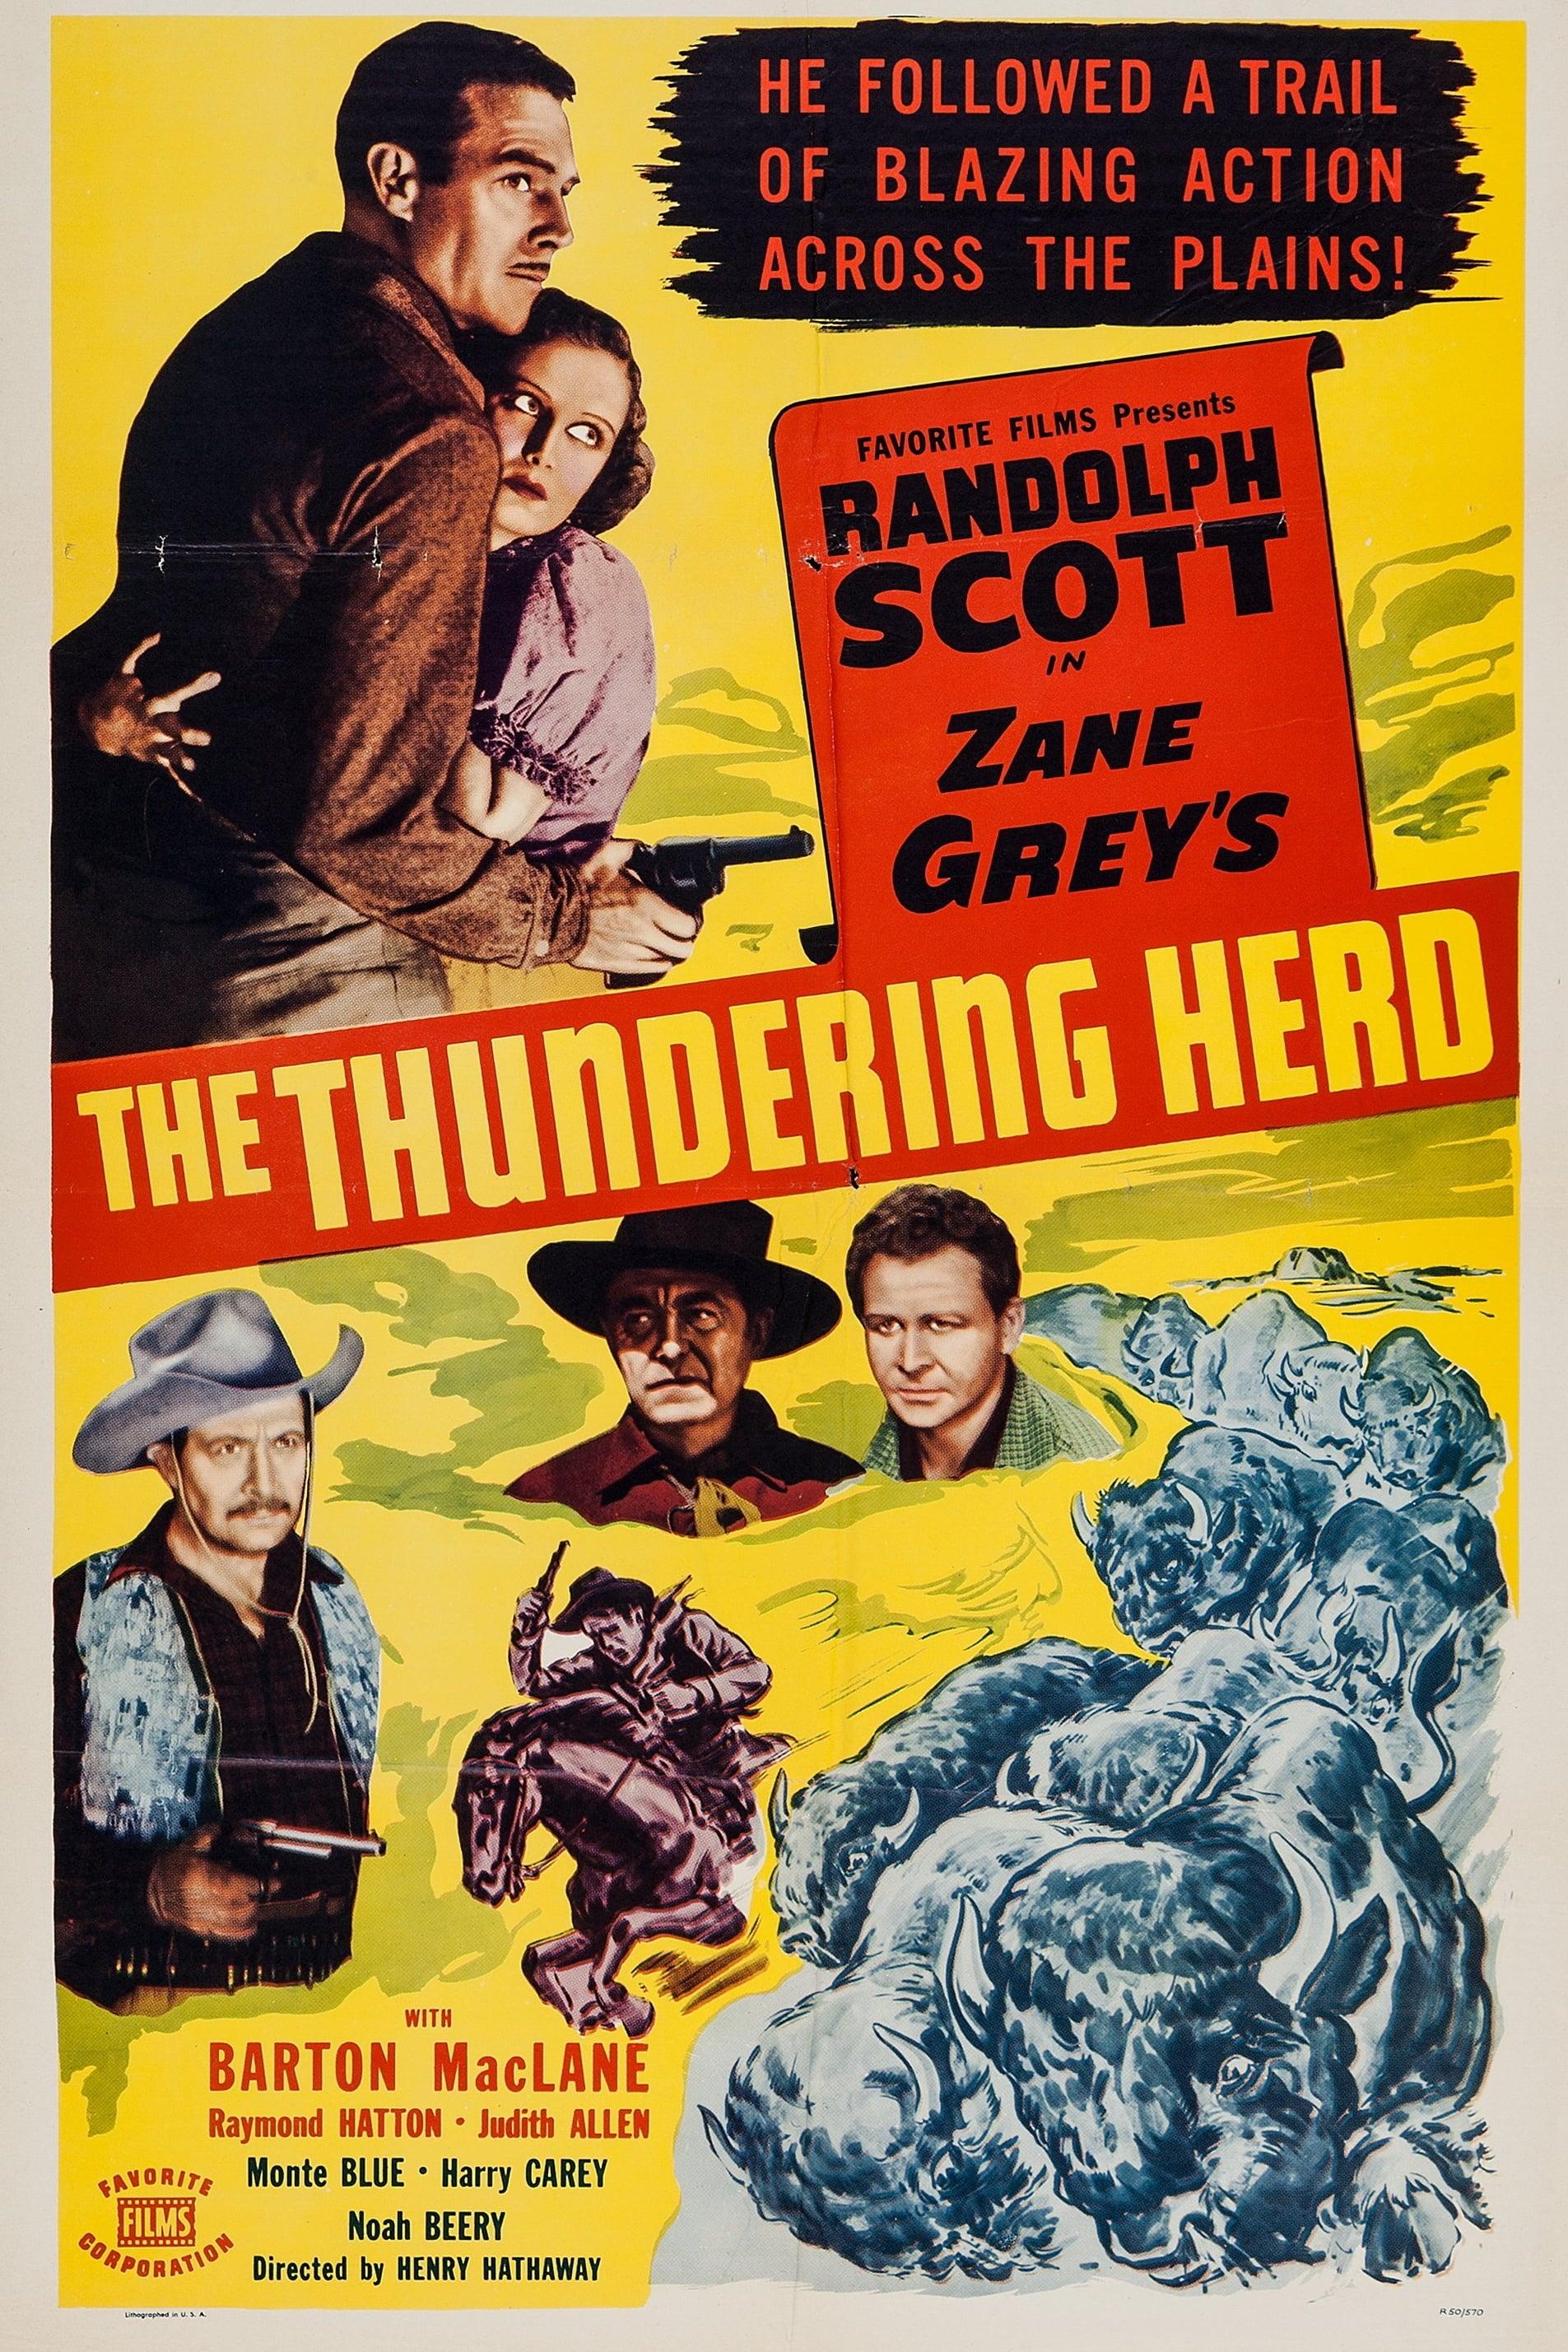 The Thundering Herd poster